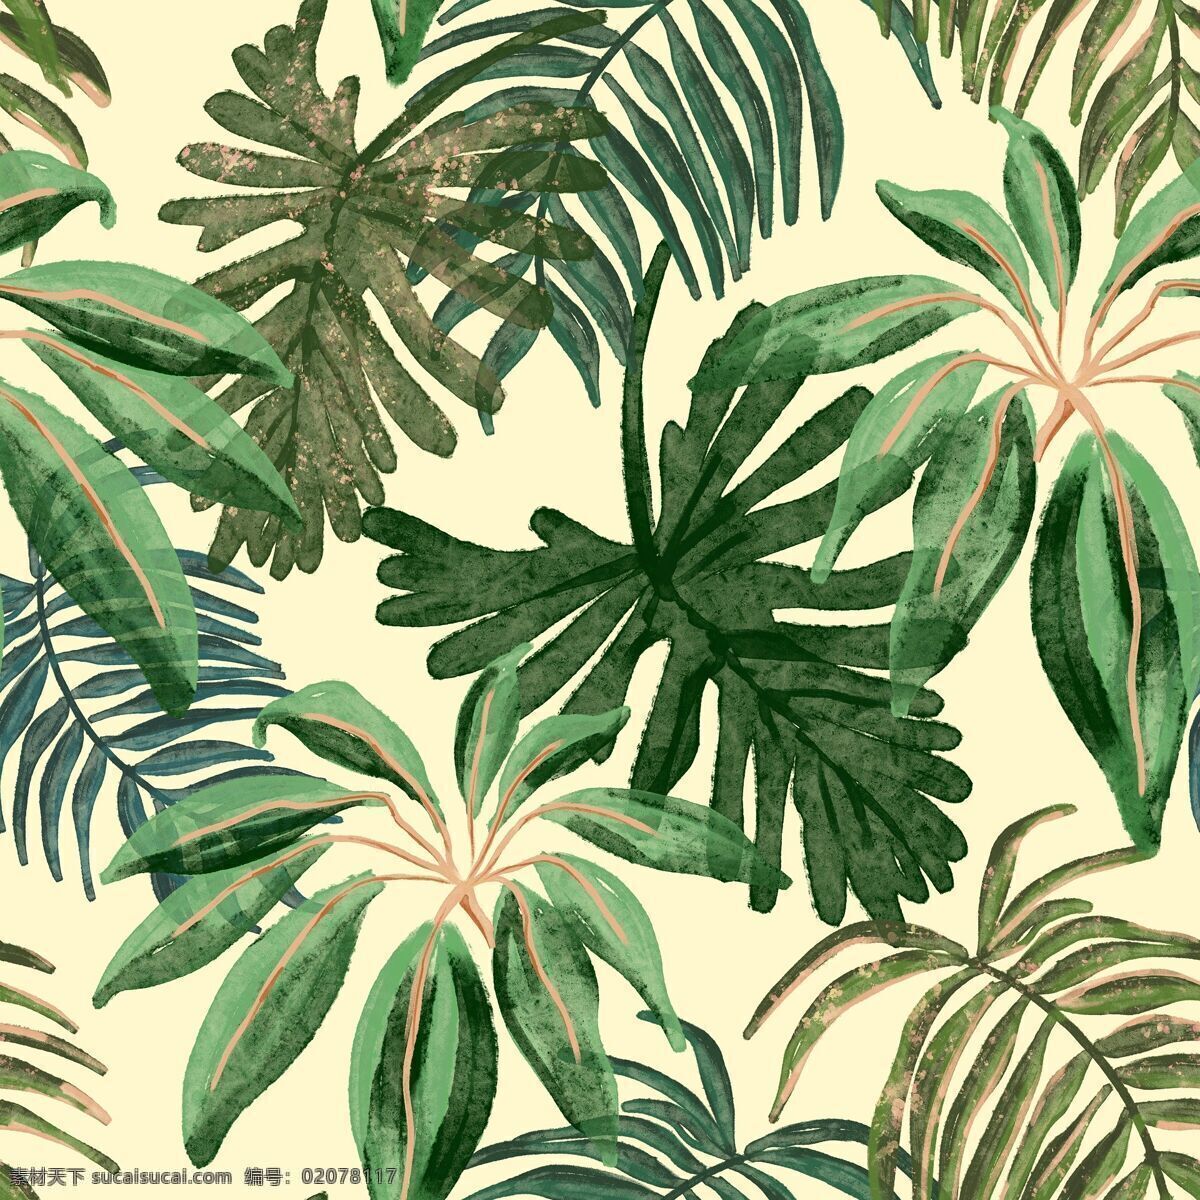 棕榈叶 热带 织构 壁纸 背景 纺织 自然 花纹 装饰性 插画 分享 底纹边框 花边花纹